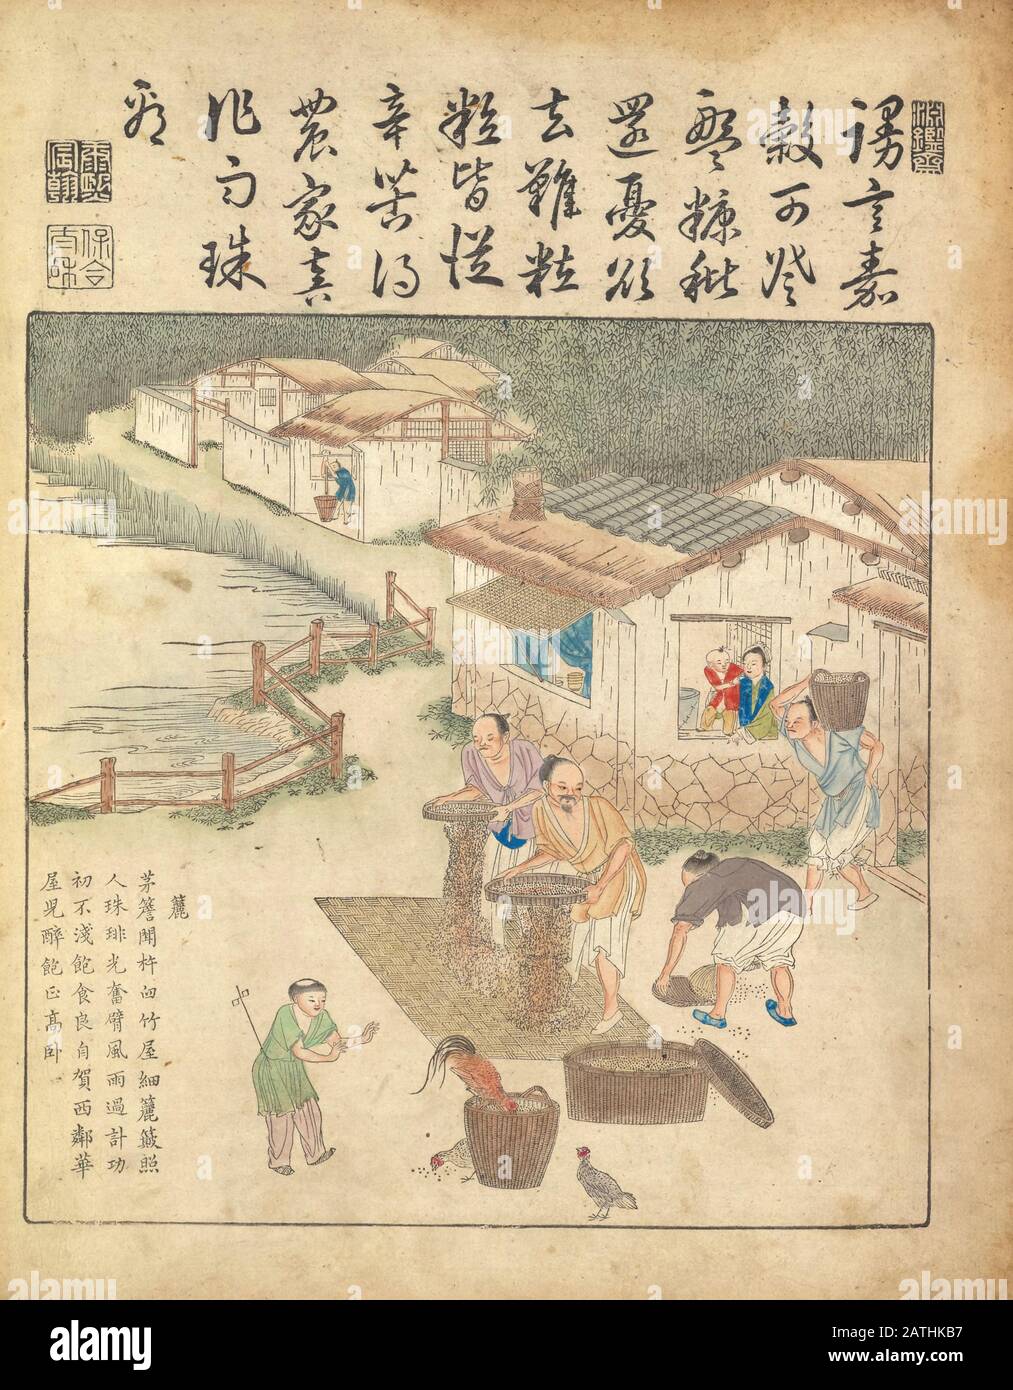 Chinesische Kunst aus dem 17. Jahrhundert Reisernte Aus Yu zhi geng zhi tu von Jiao, Bingzhen, 1696 Stockfoto